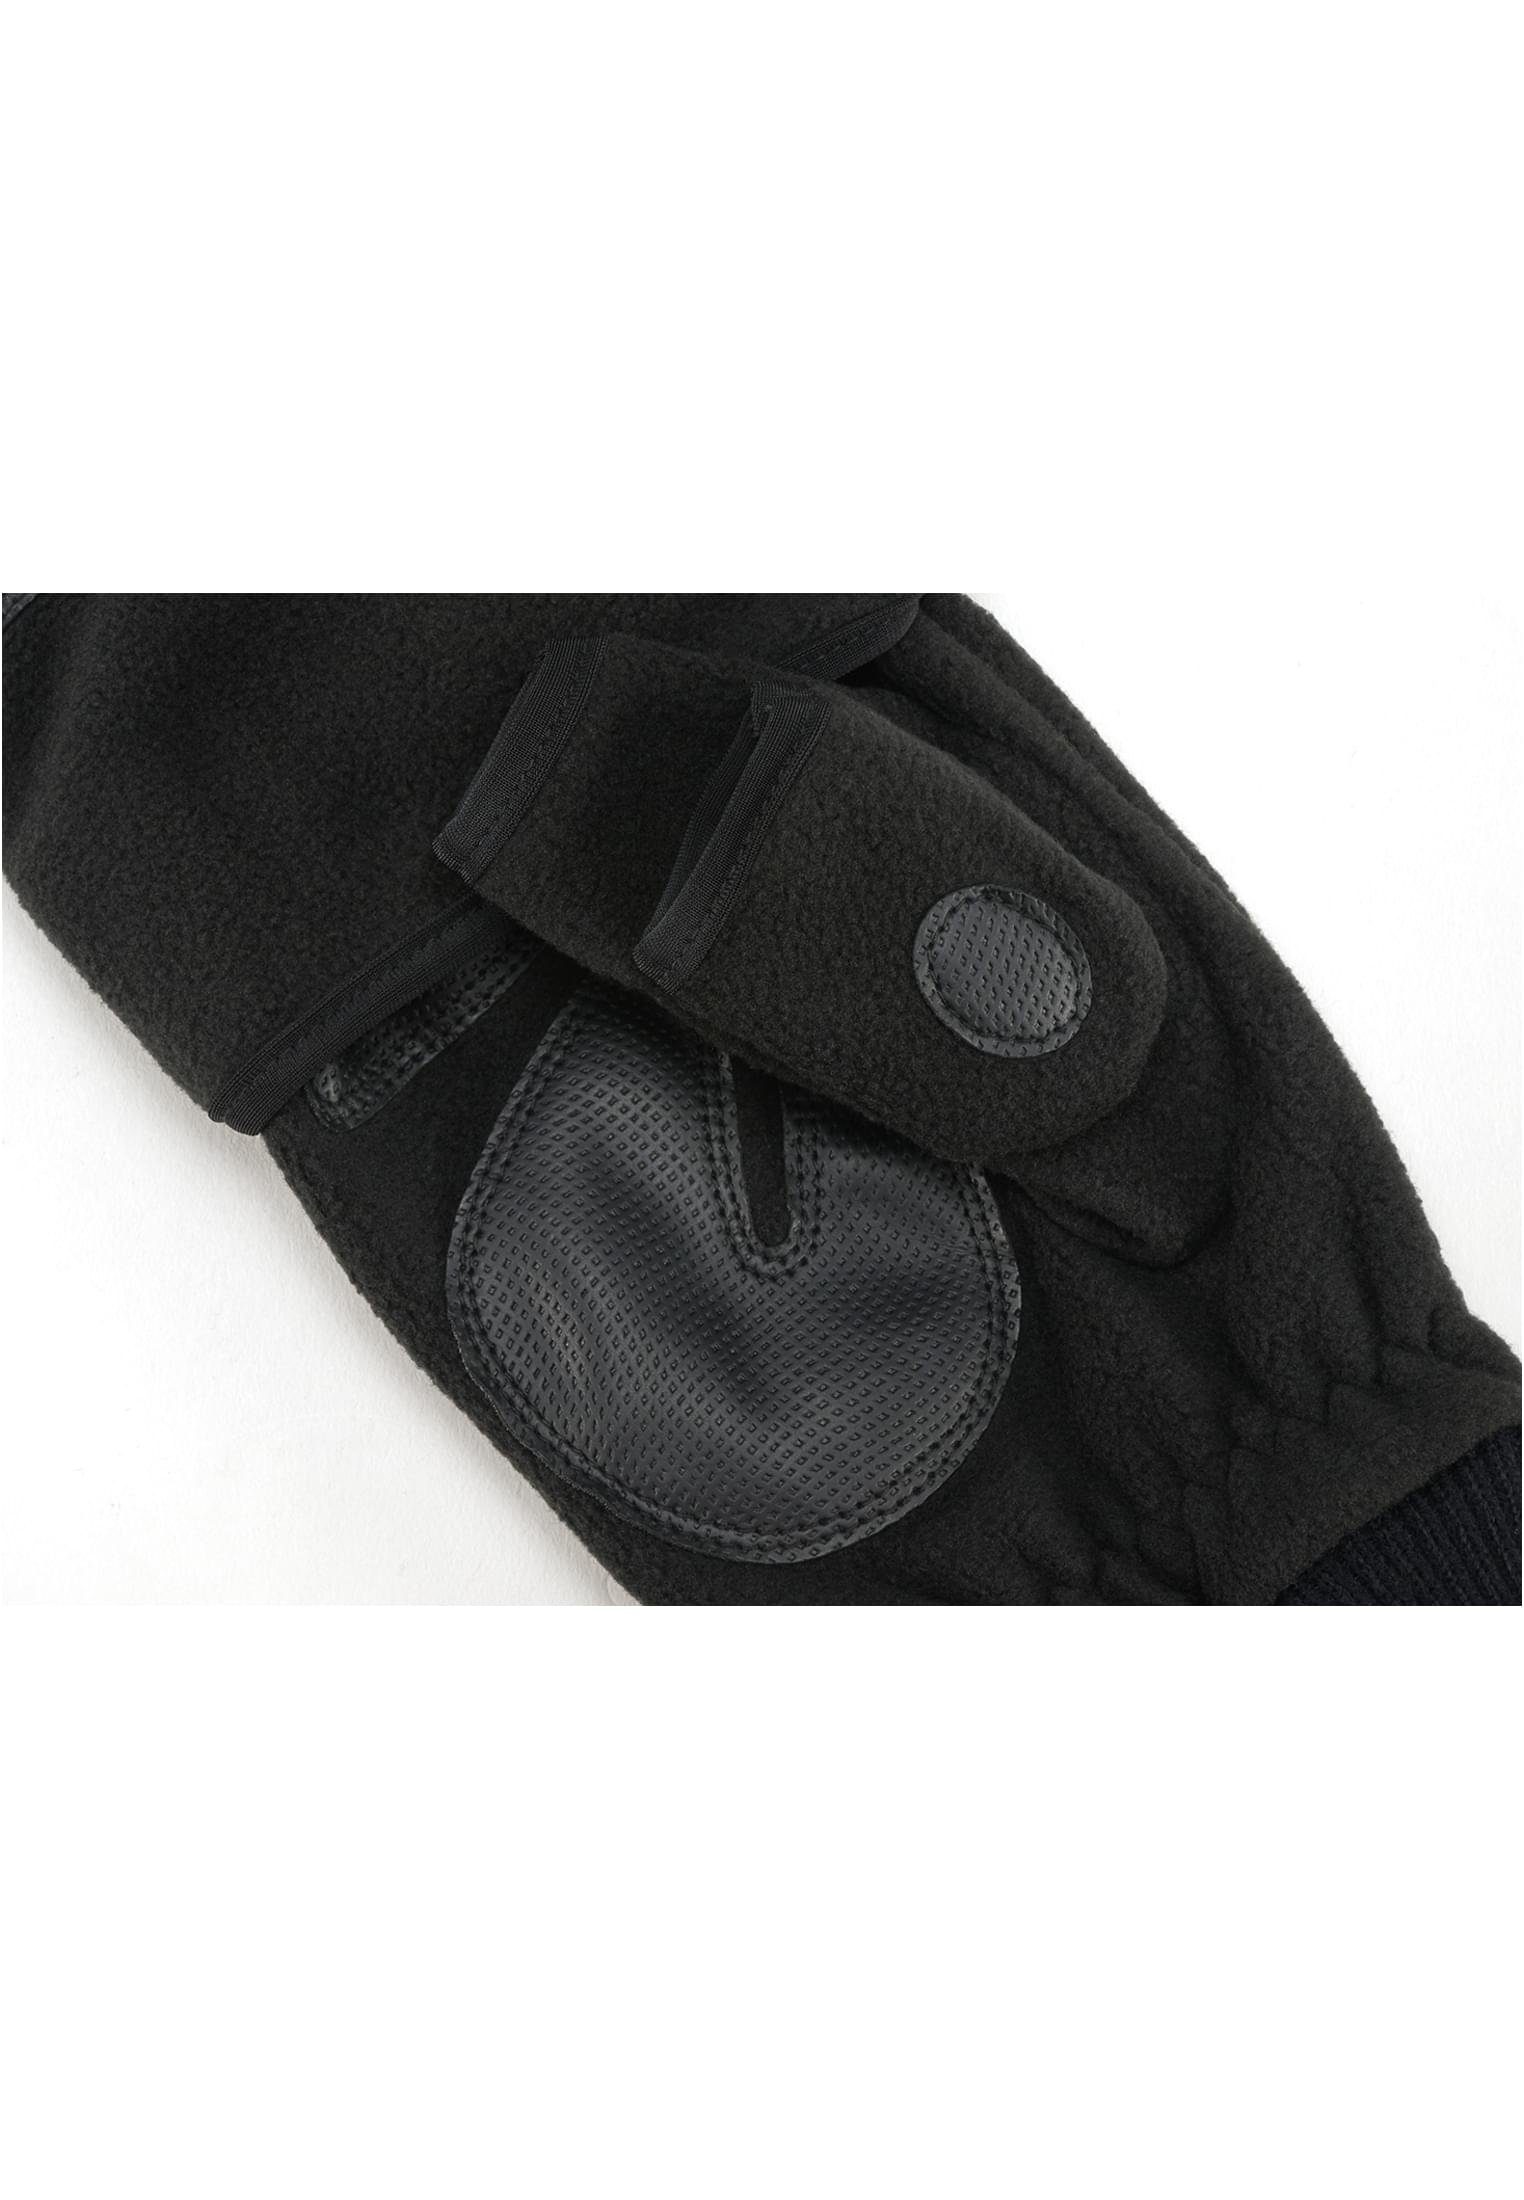 Brandit black Trigger Gloves Baumwollhandschuhe Accessoires